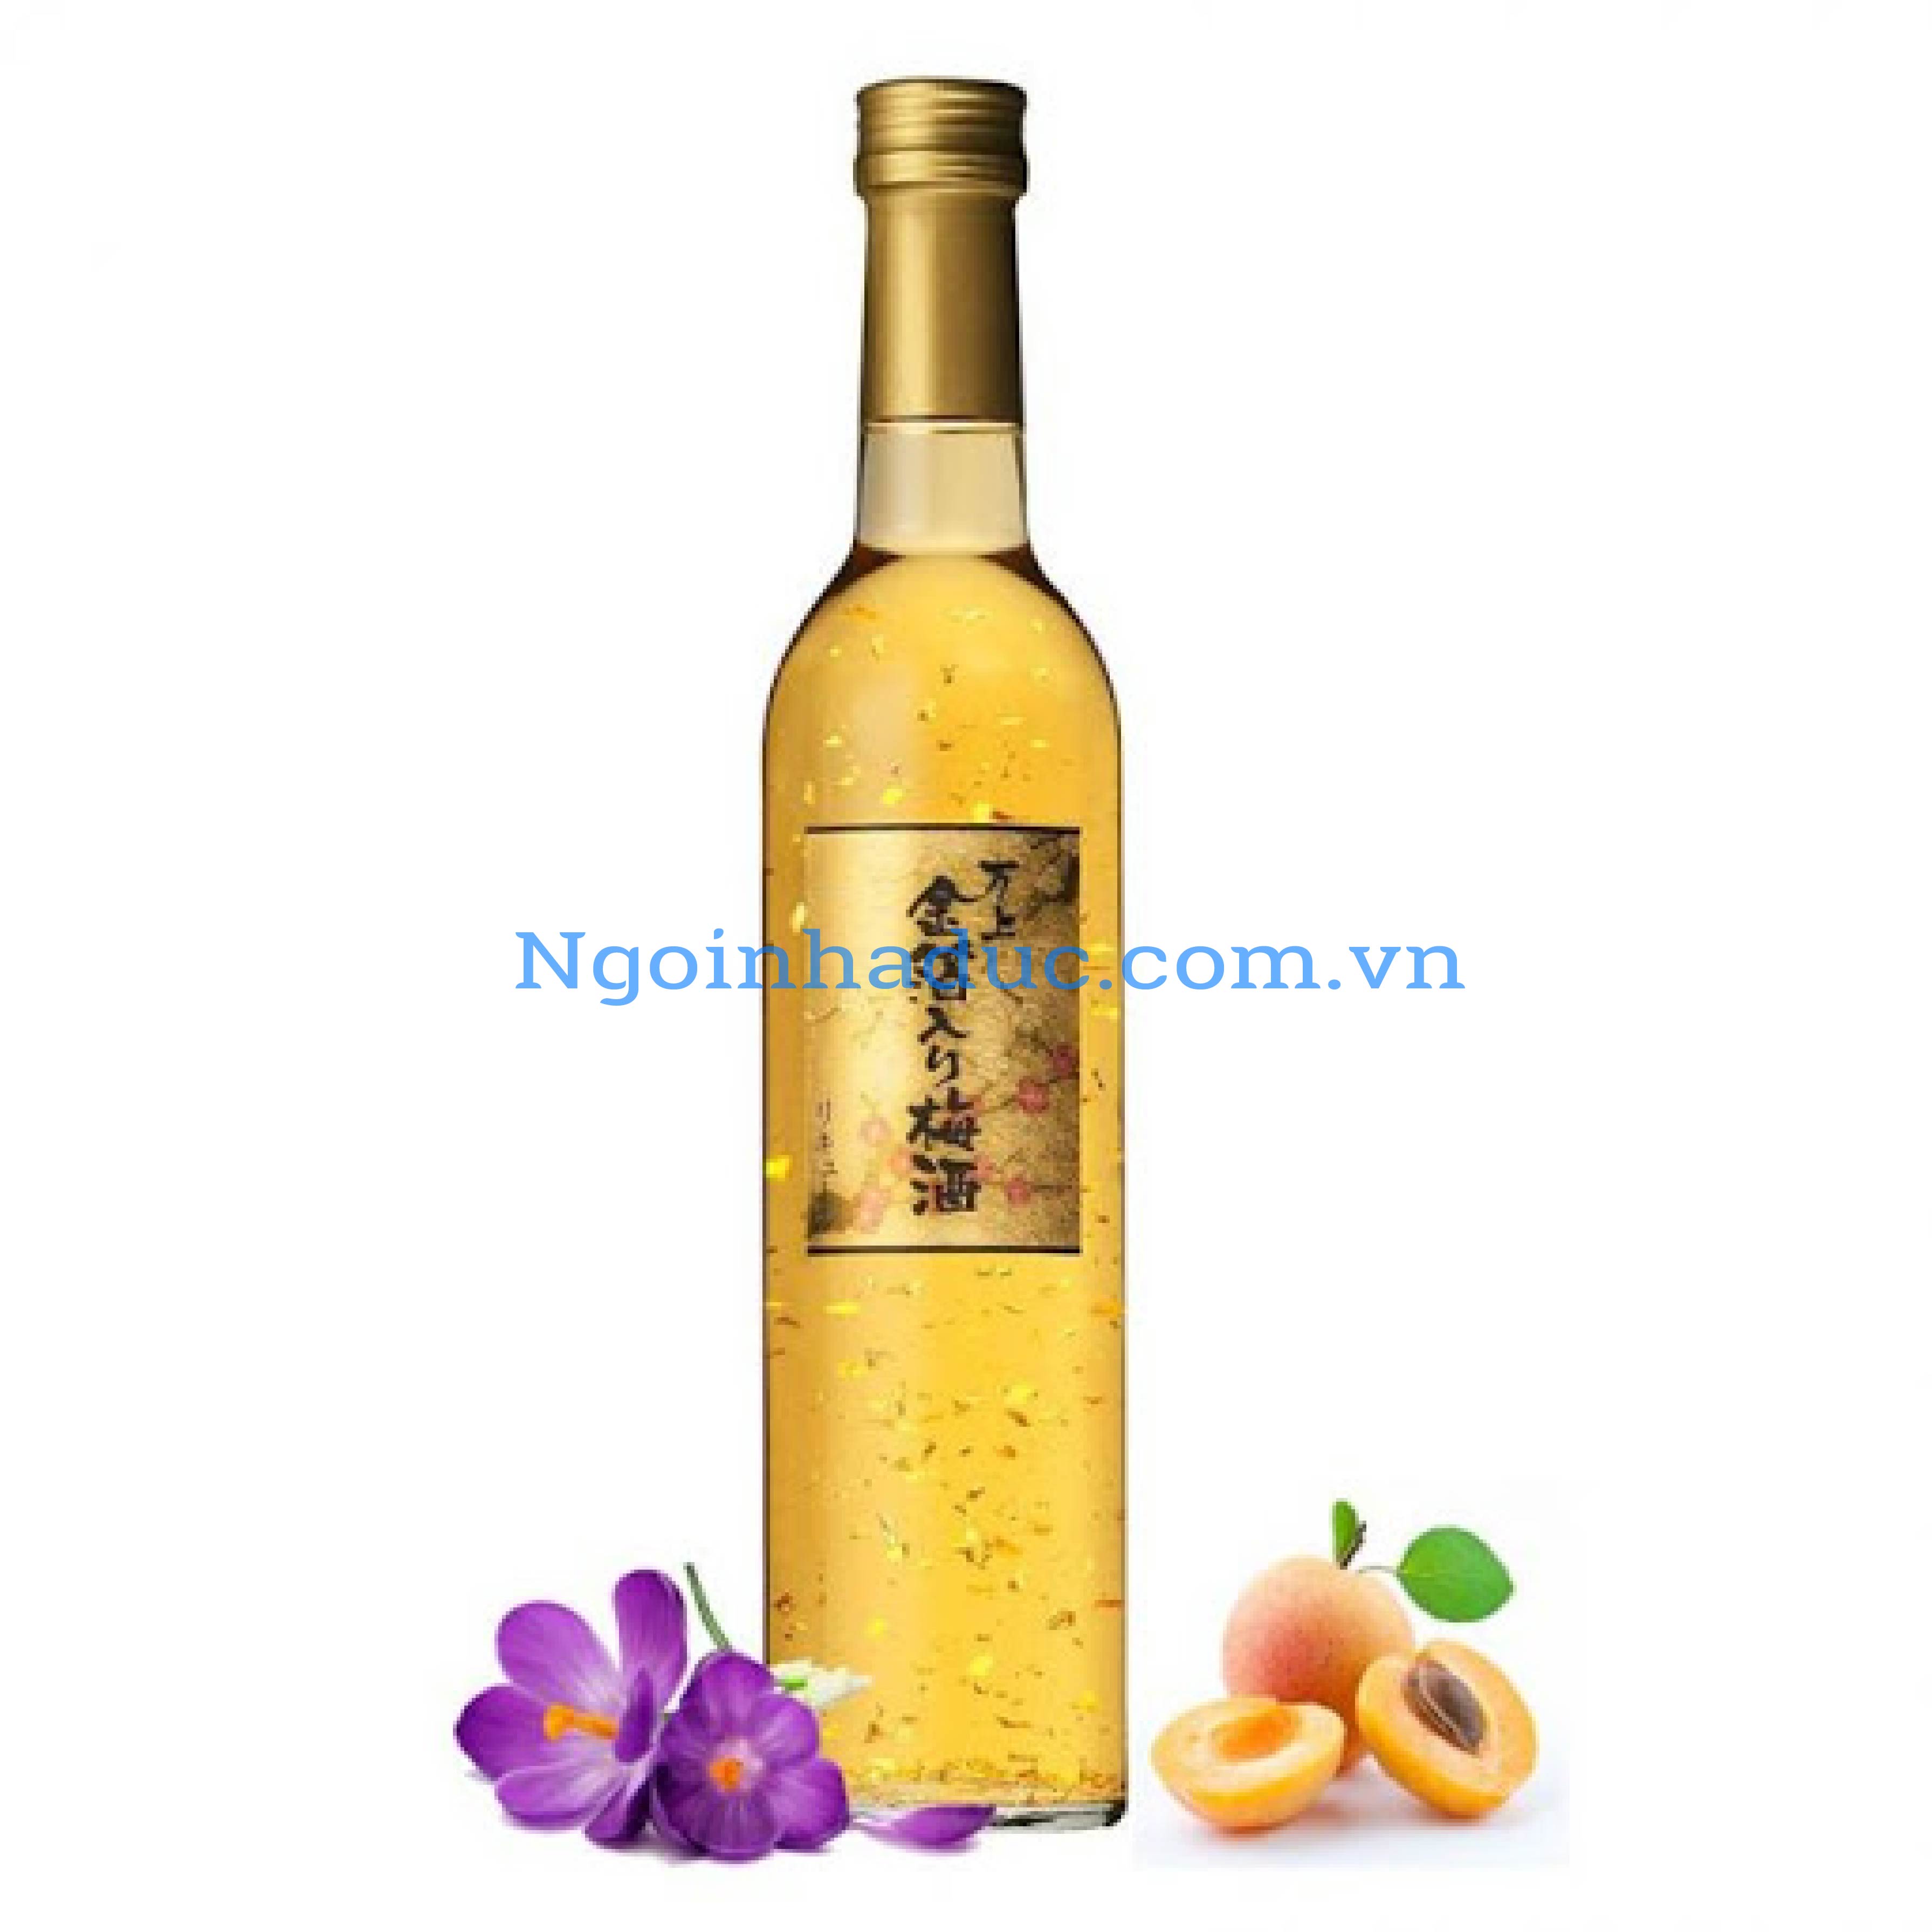 Rượu mơ vẩy vàng Kikkoman 500ml - 13% (Nhật)